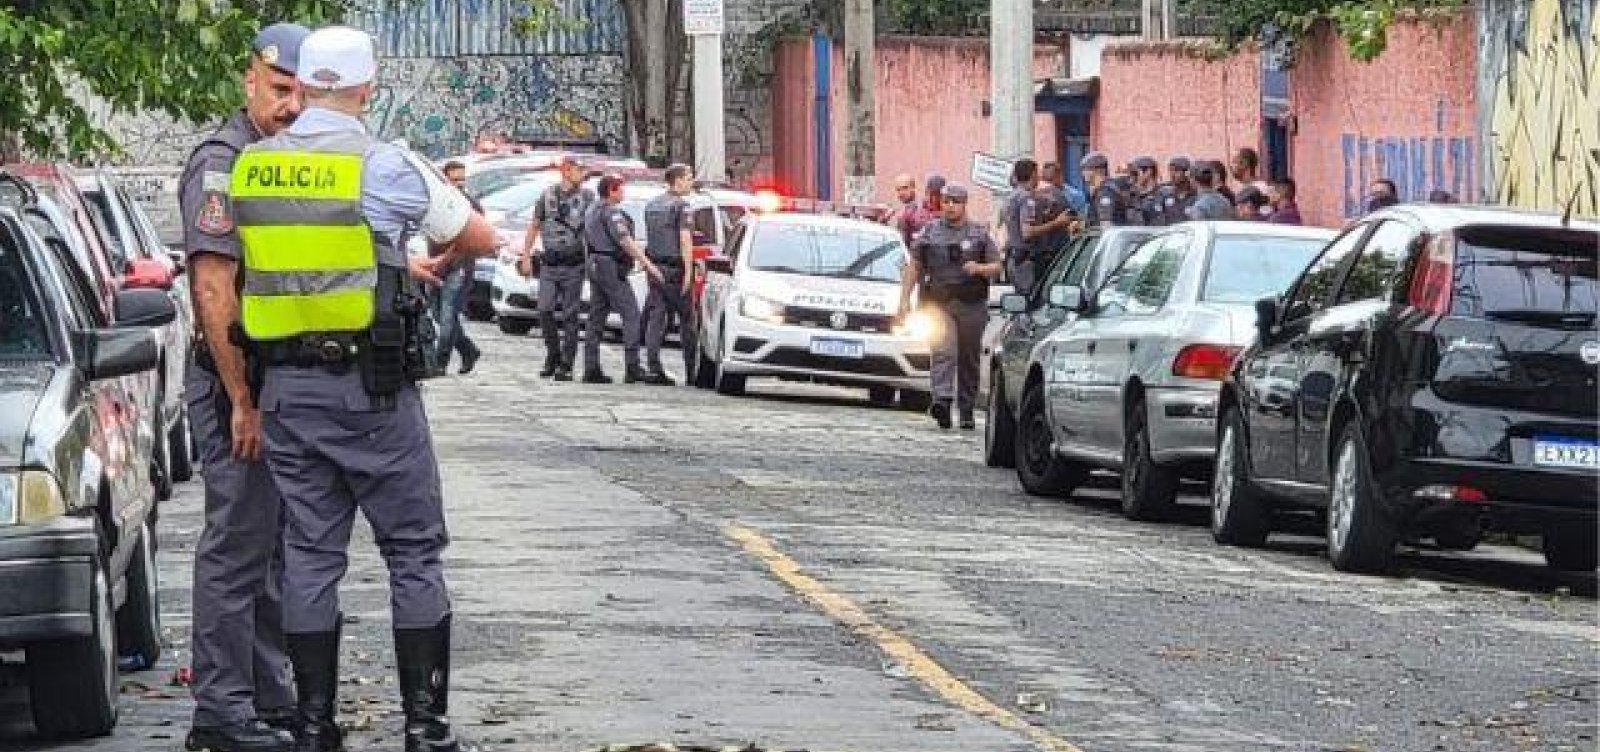 Ataque a facadas em escola de São Paulo deixa 4 feridos